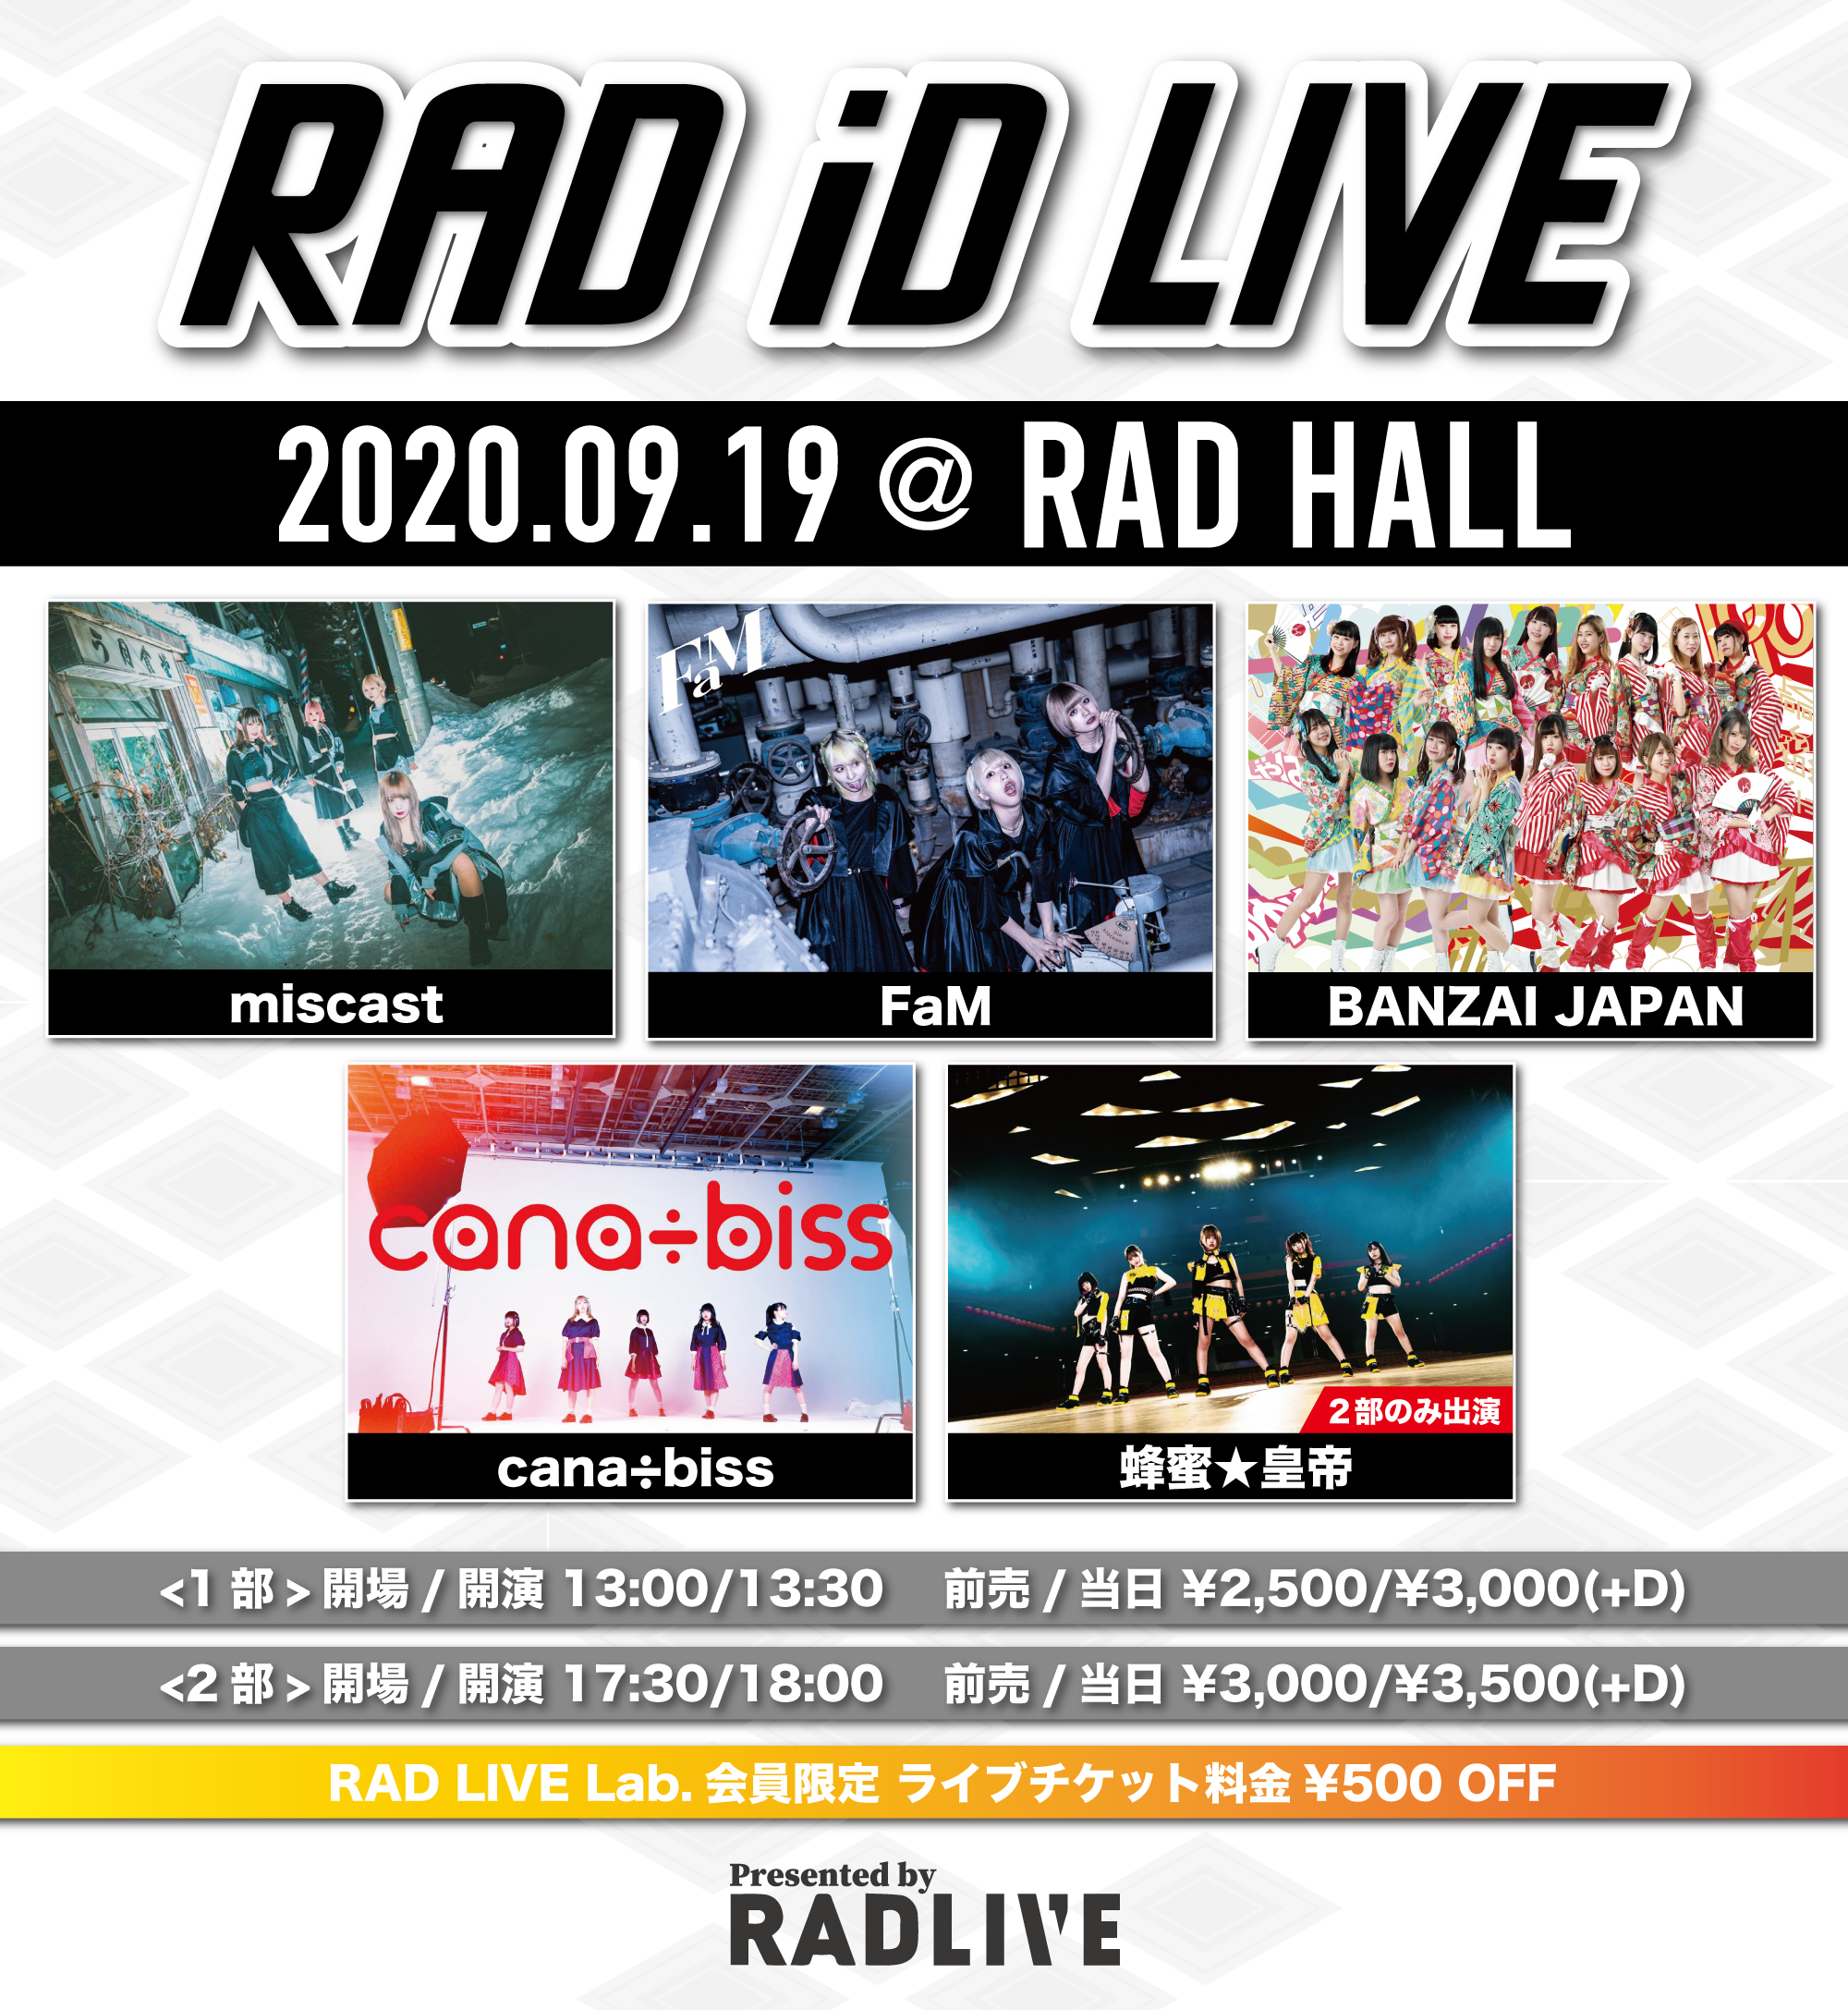 RAD iD LIVE 1部